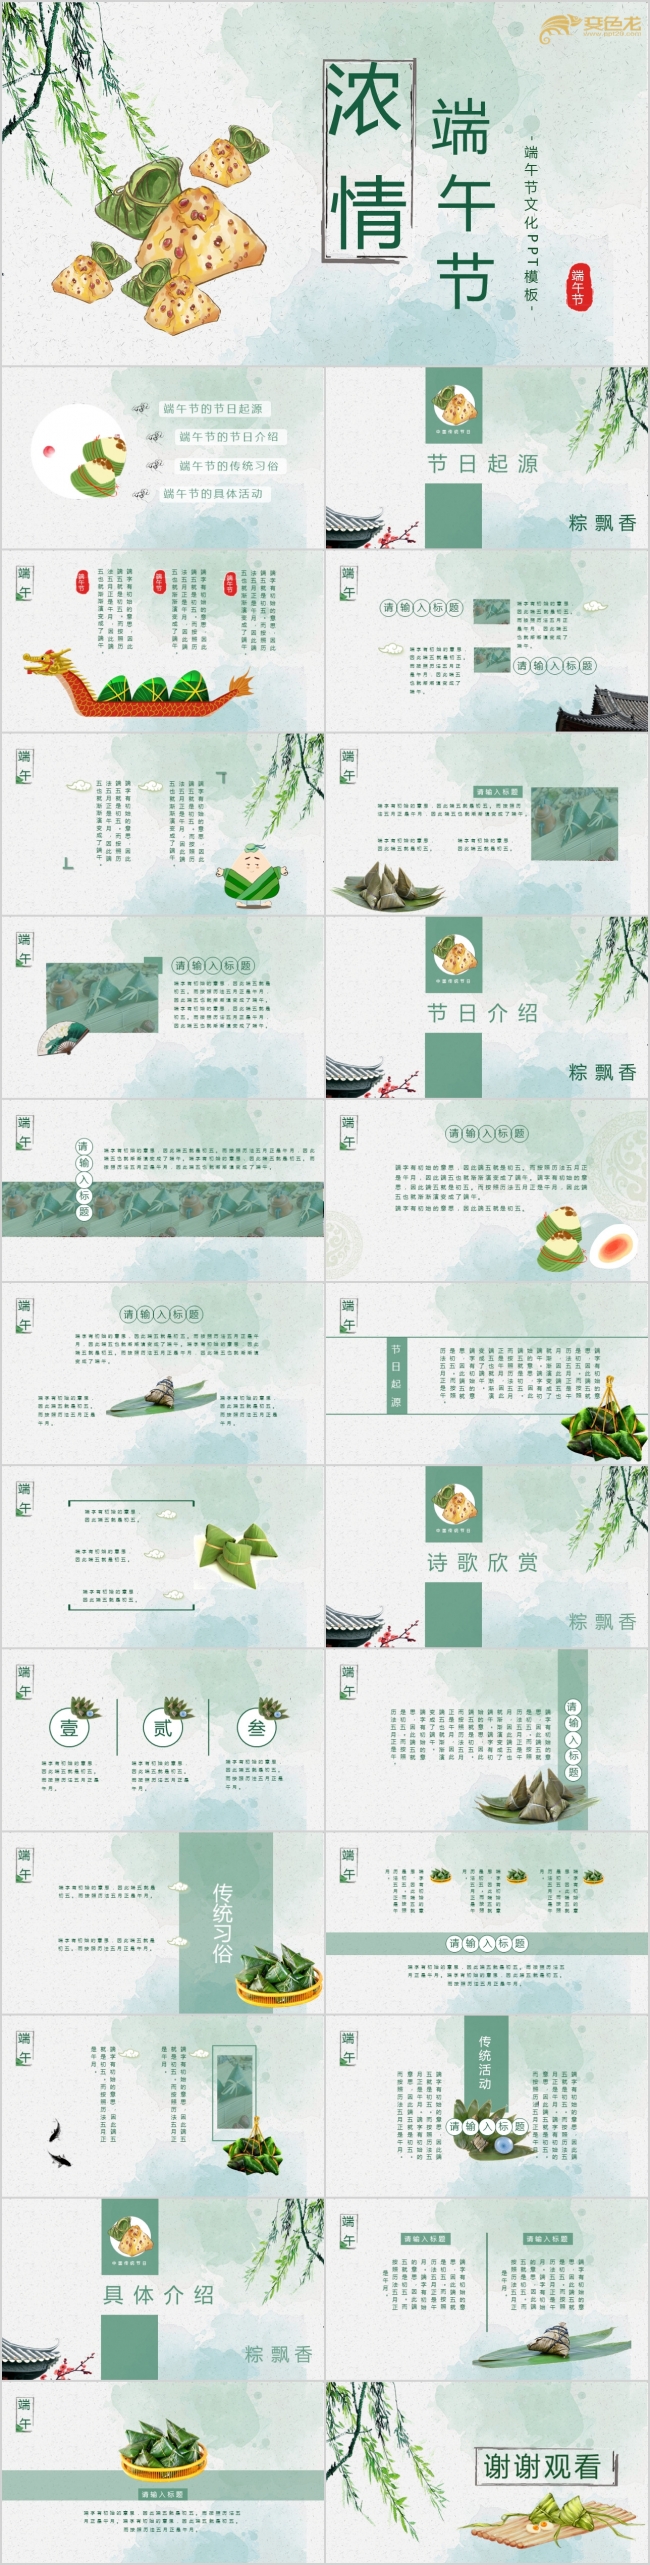 清新绿色浓情端午节日民俗文化介绍PPT模板